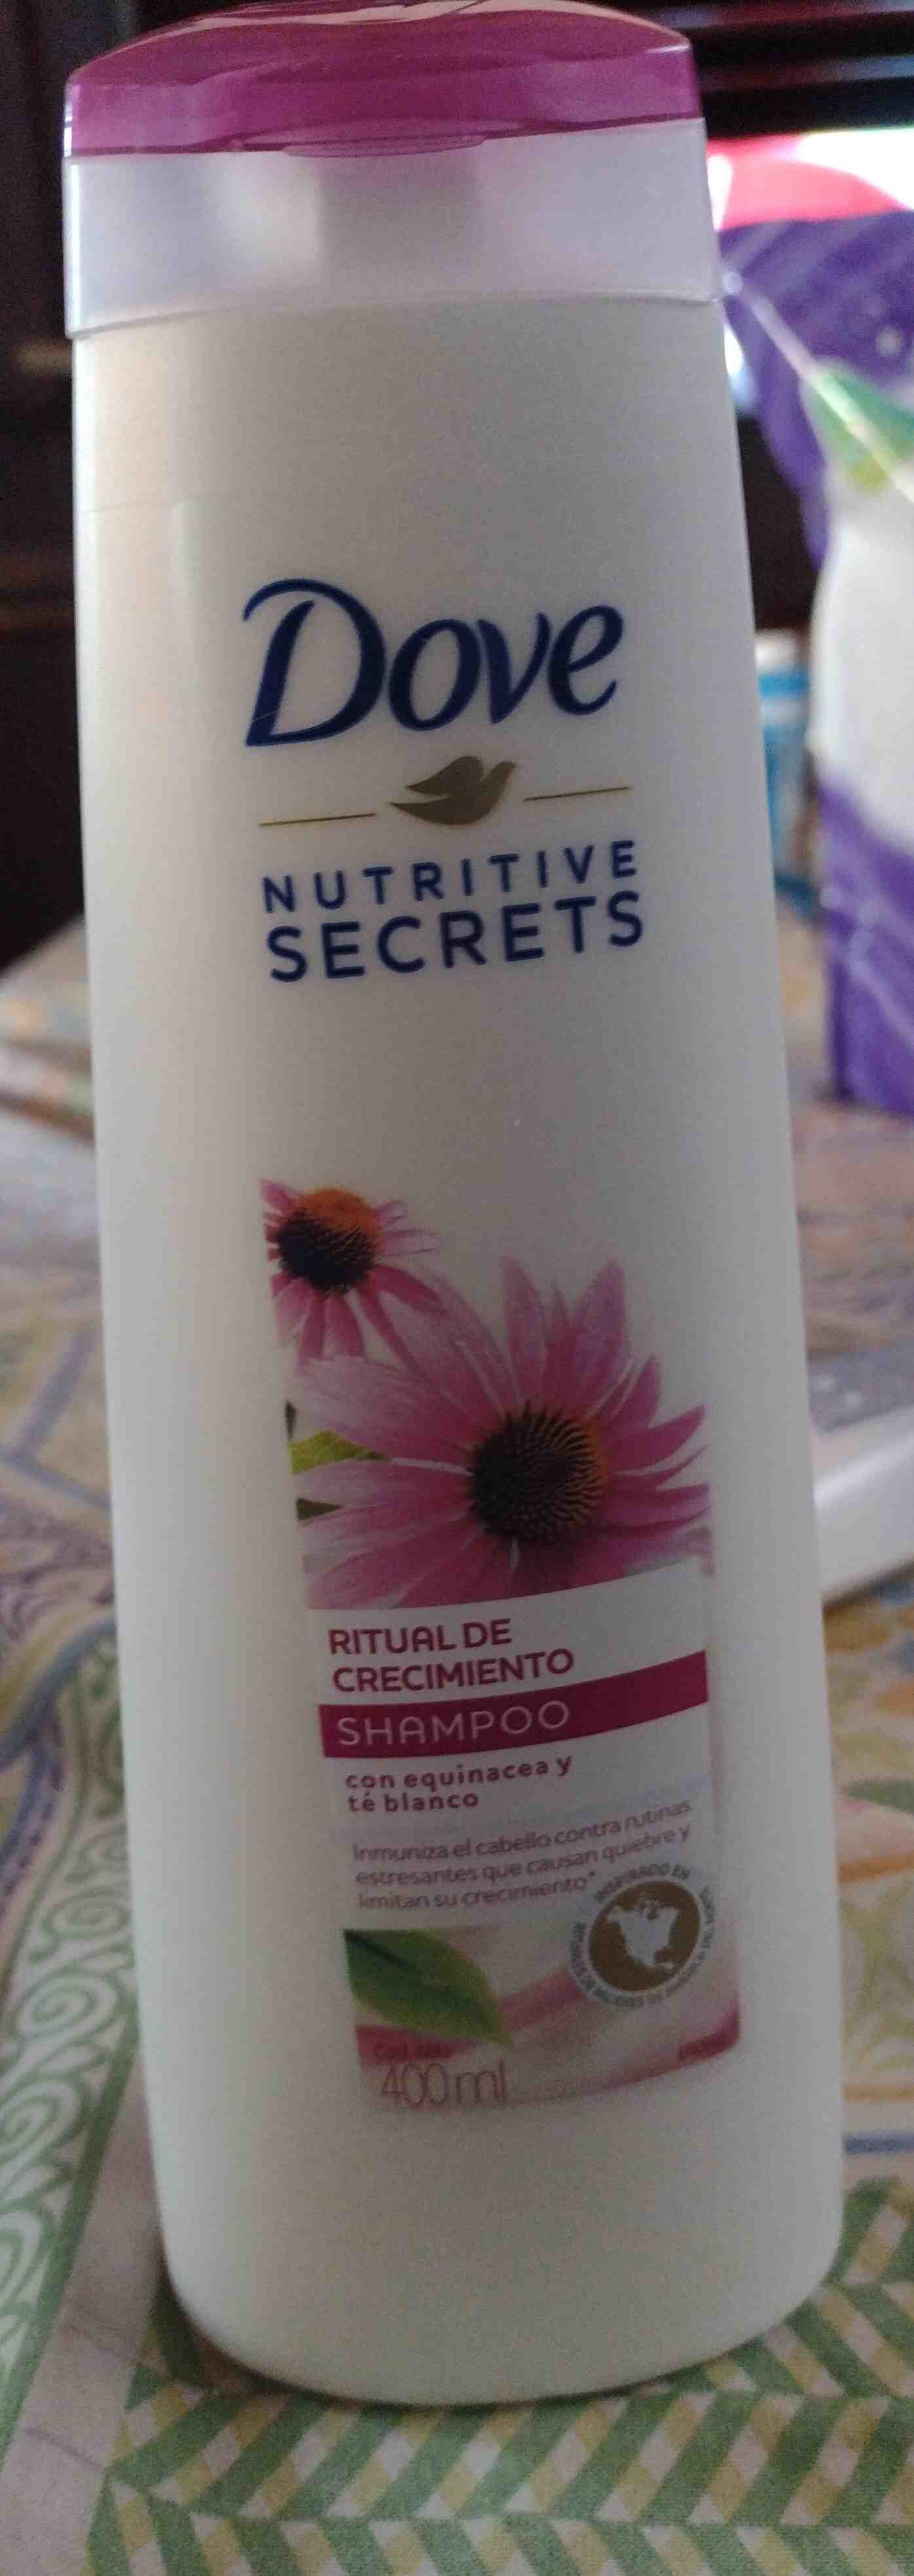 Shampoo ritual de crecimiento - Product - en